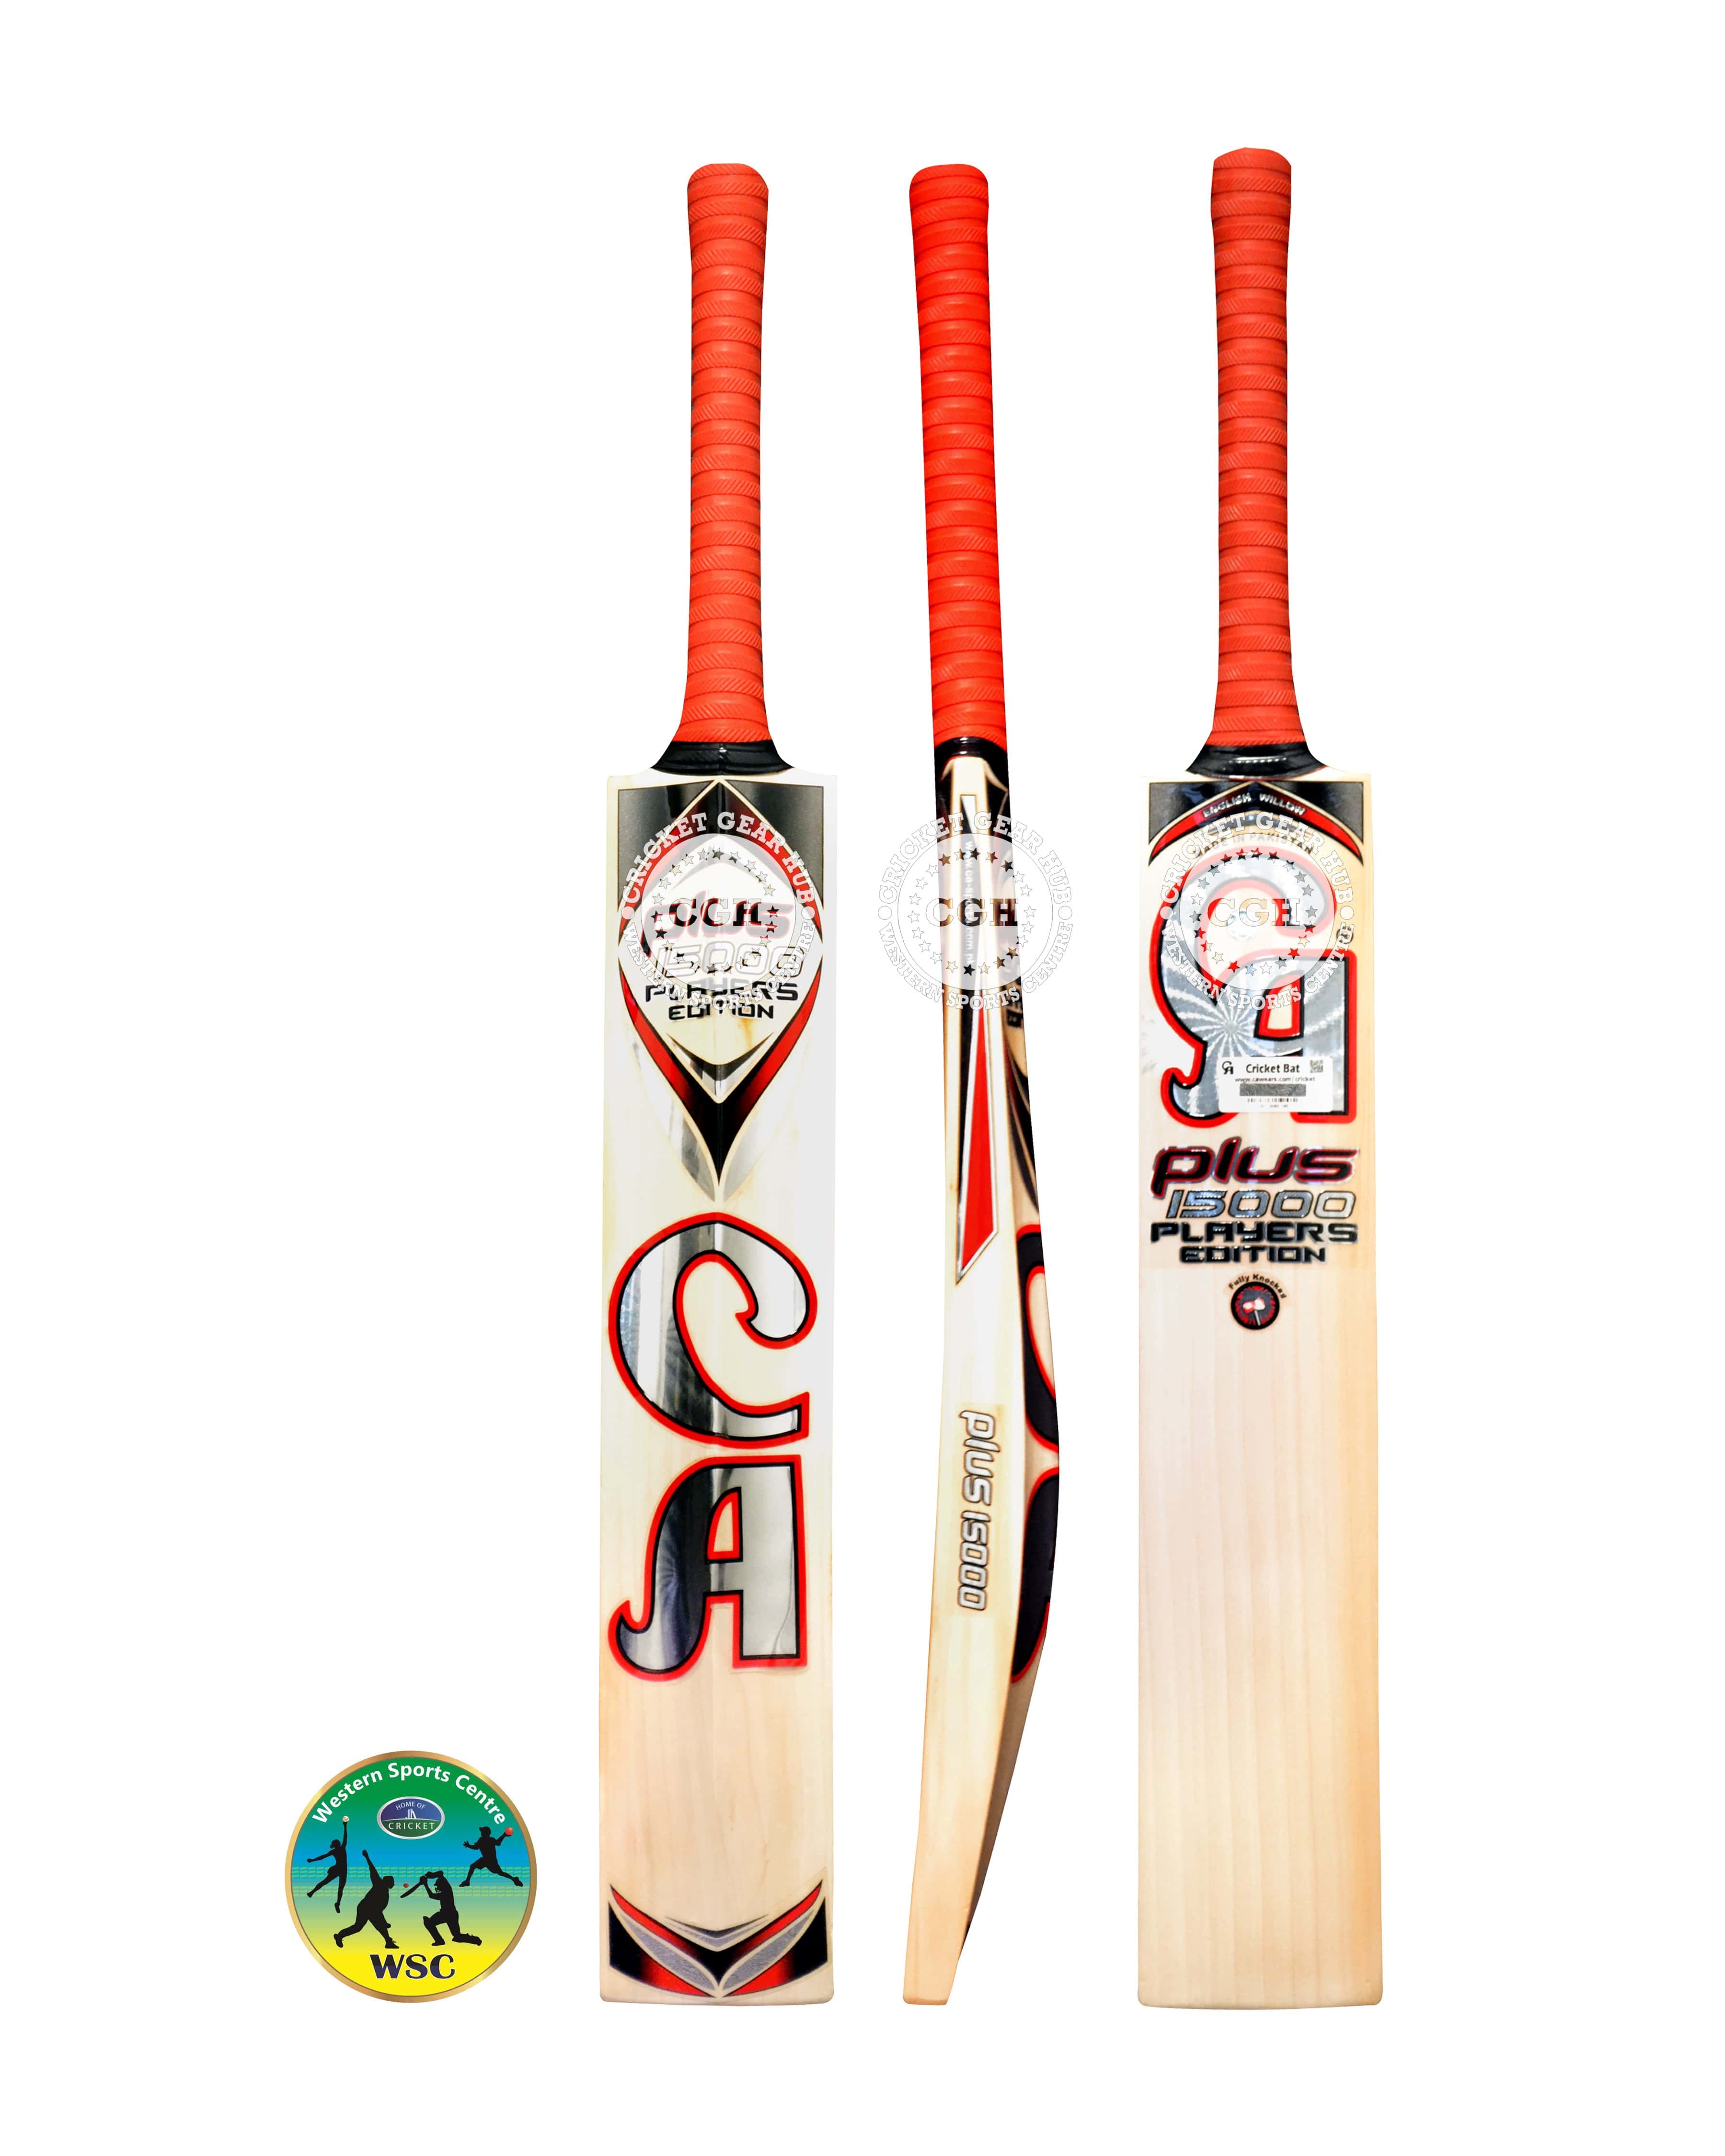 CA Cricket Bats Short Hand CA Plus 15000 PLAYERS EDITION SH Cricket Bat